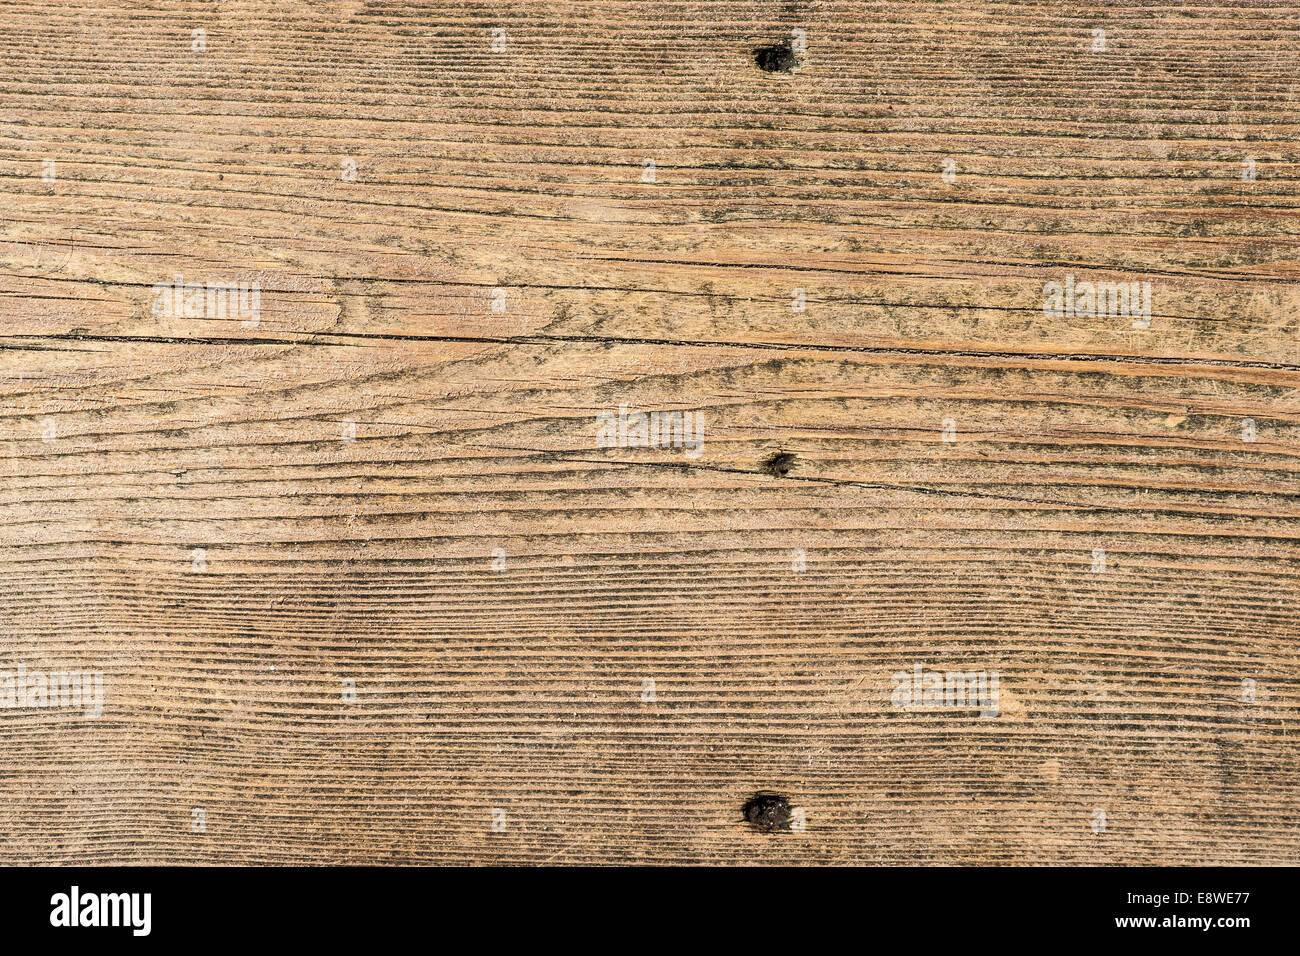 Terrasse en bois de texture. Couvrant le bois avec trous de clous, des fissures, et le sable Banque D'Images